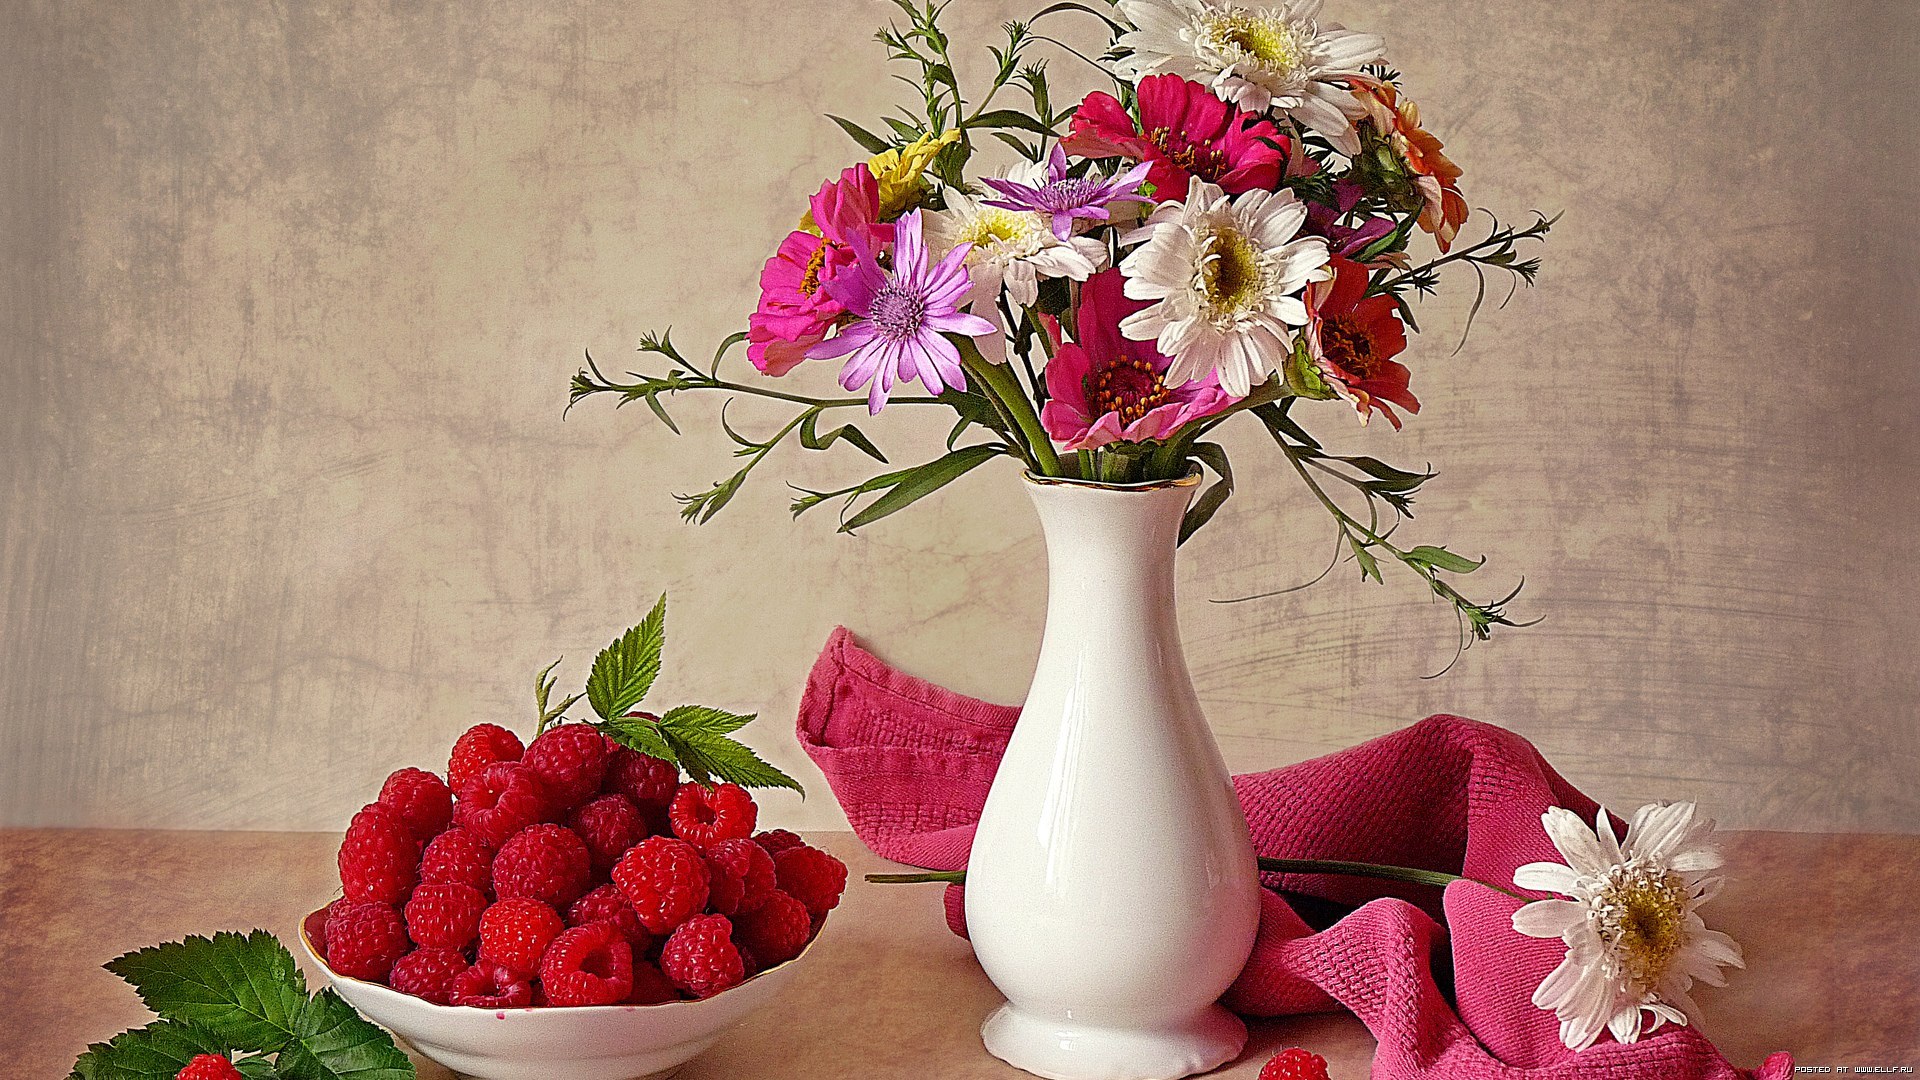 bouquets, flowers, plants, still life HD wallpaper